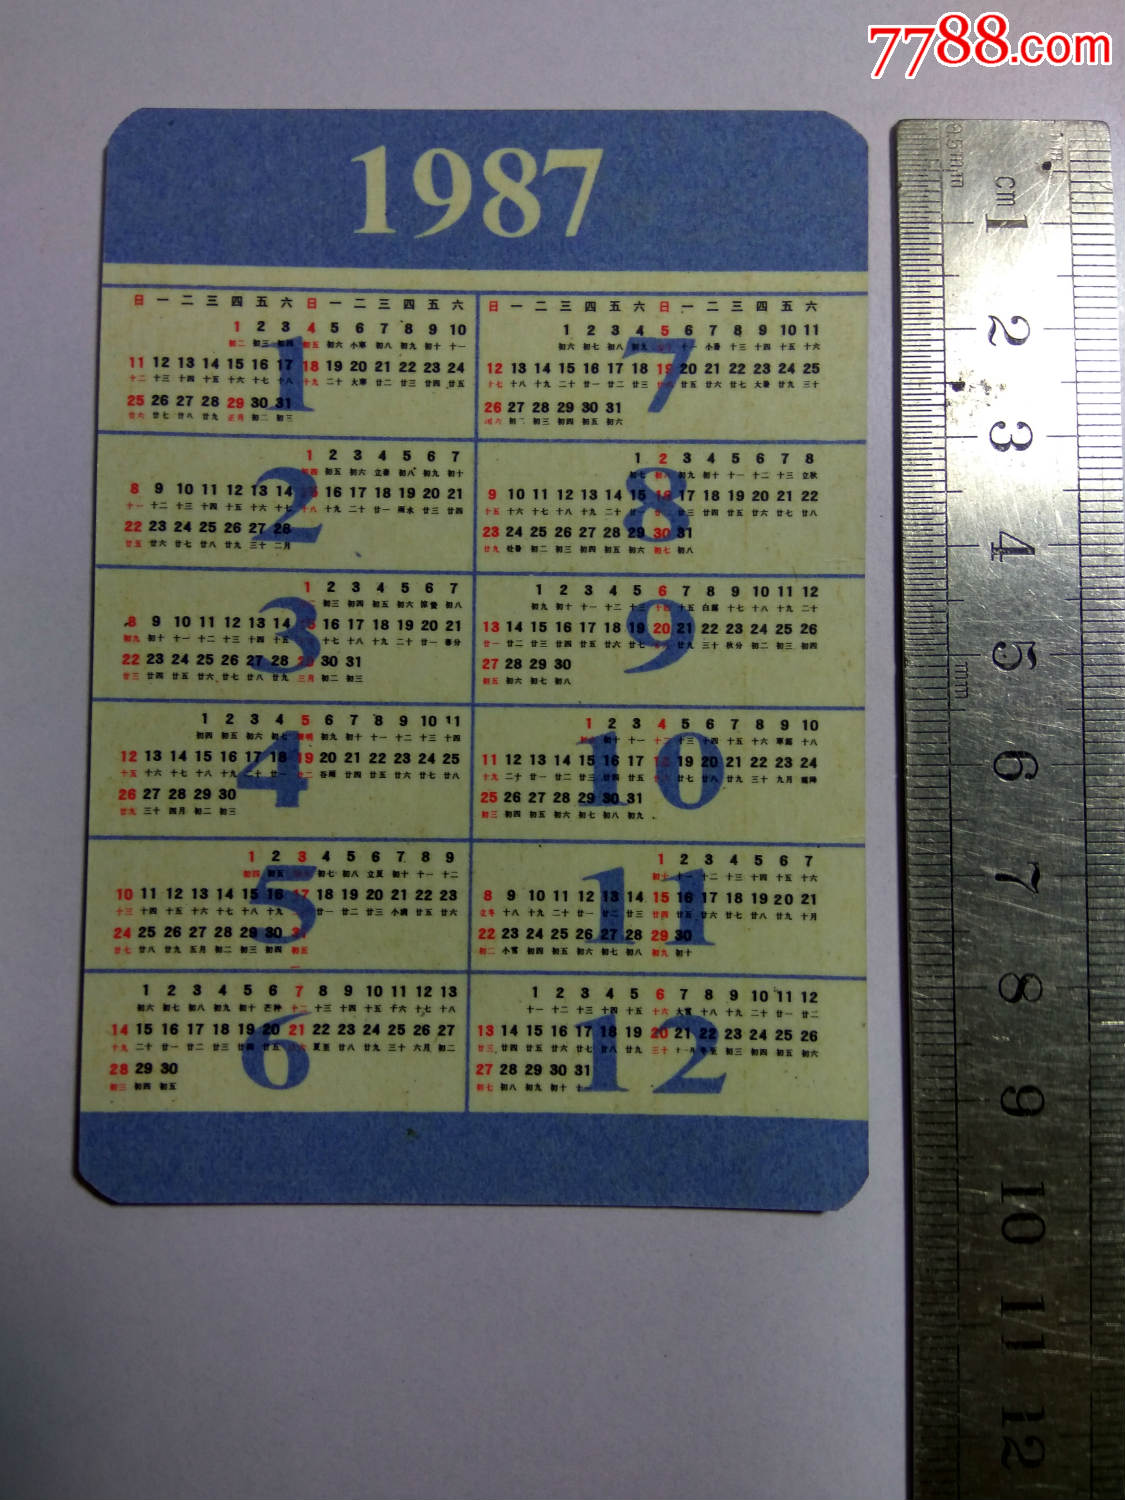 1987年历表(福禄寿全)